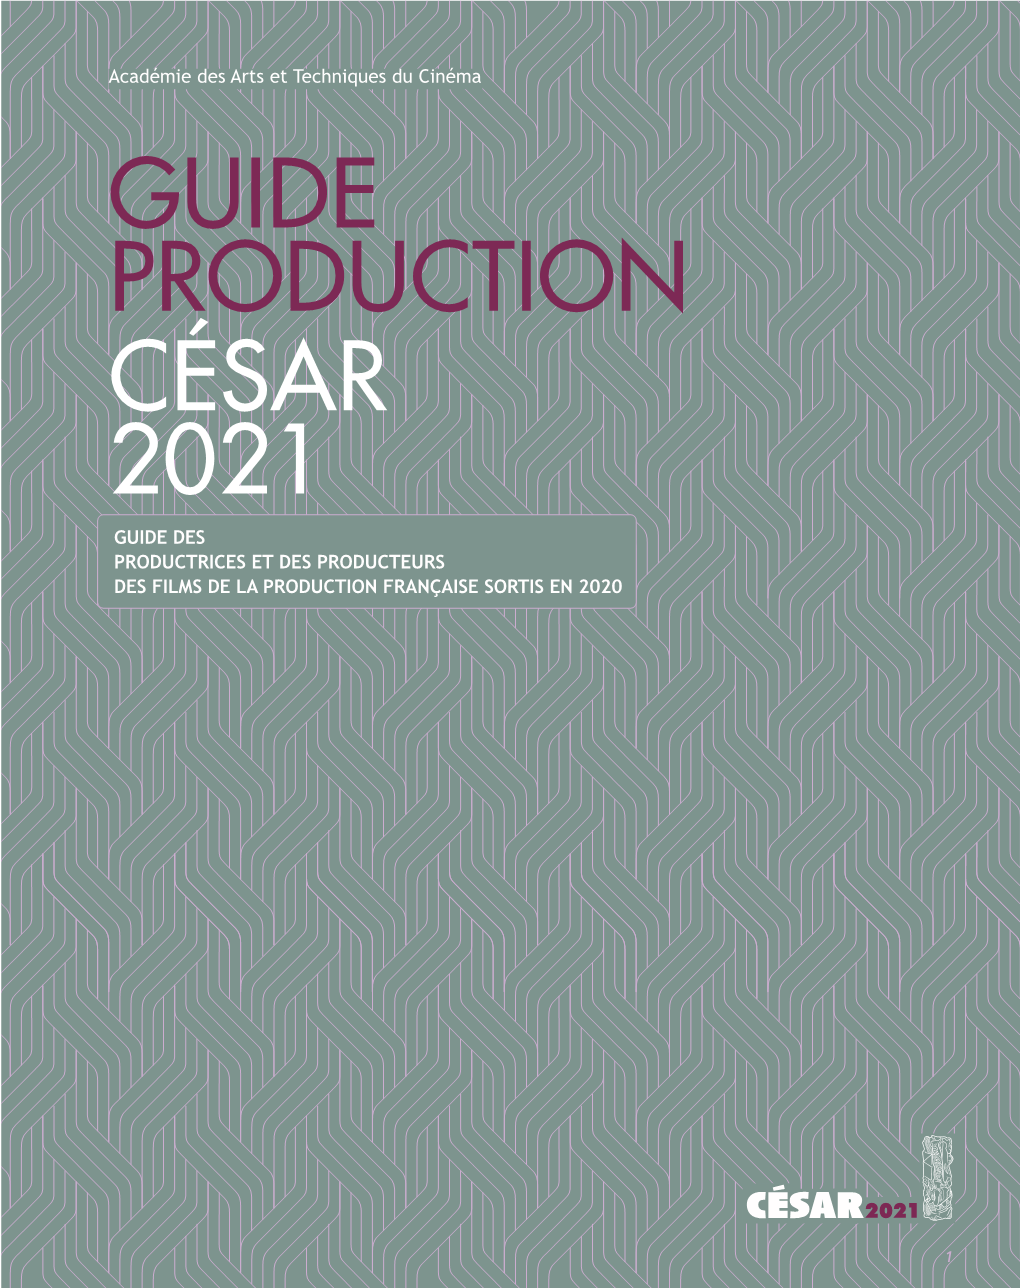 Guide Production César 2021 Guide Des Productrices Et Des Producteurs Des Films De La Production Française Sortis En 2020